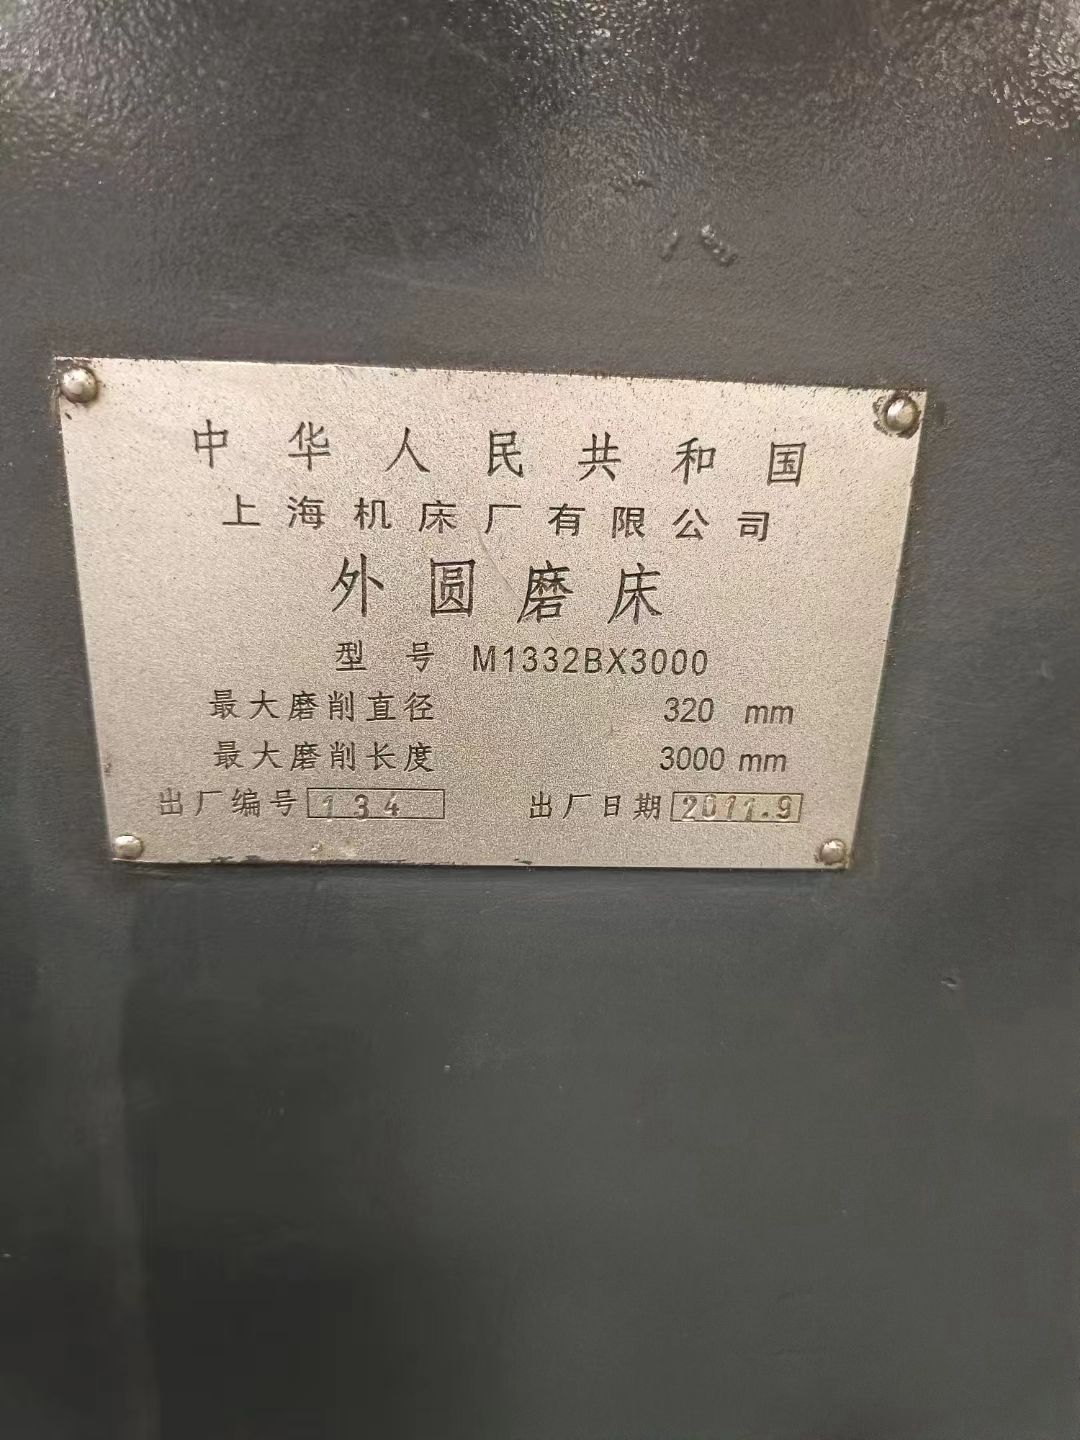 出售二手上海M1332Bx3000外圆磨床磨削直径320